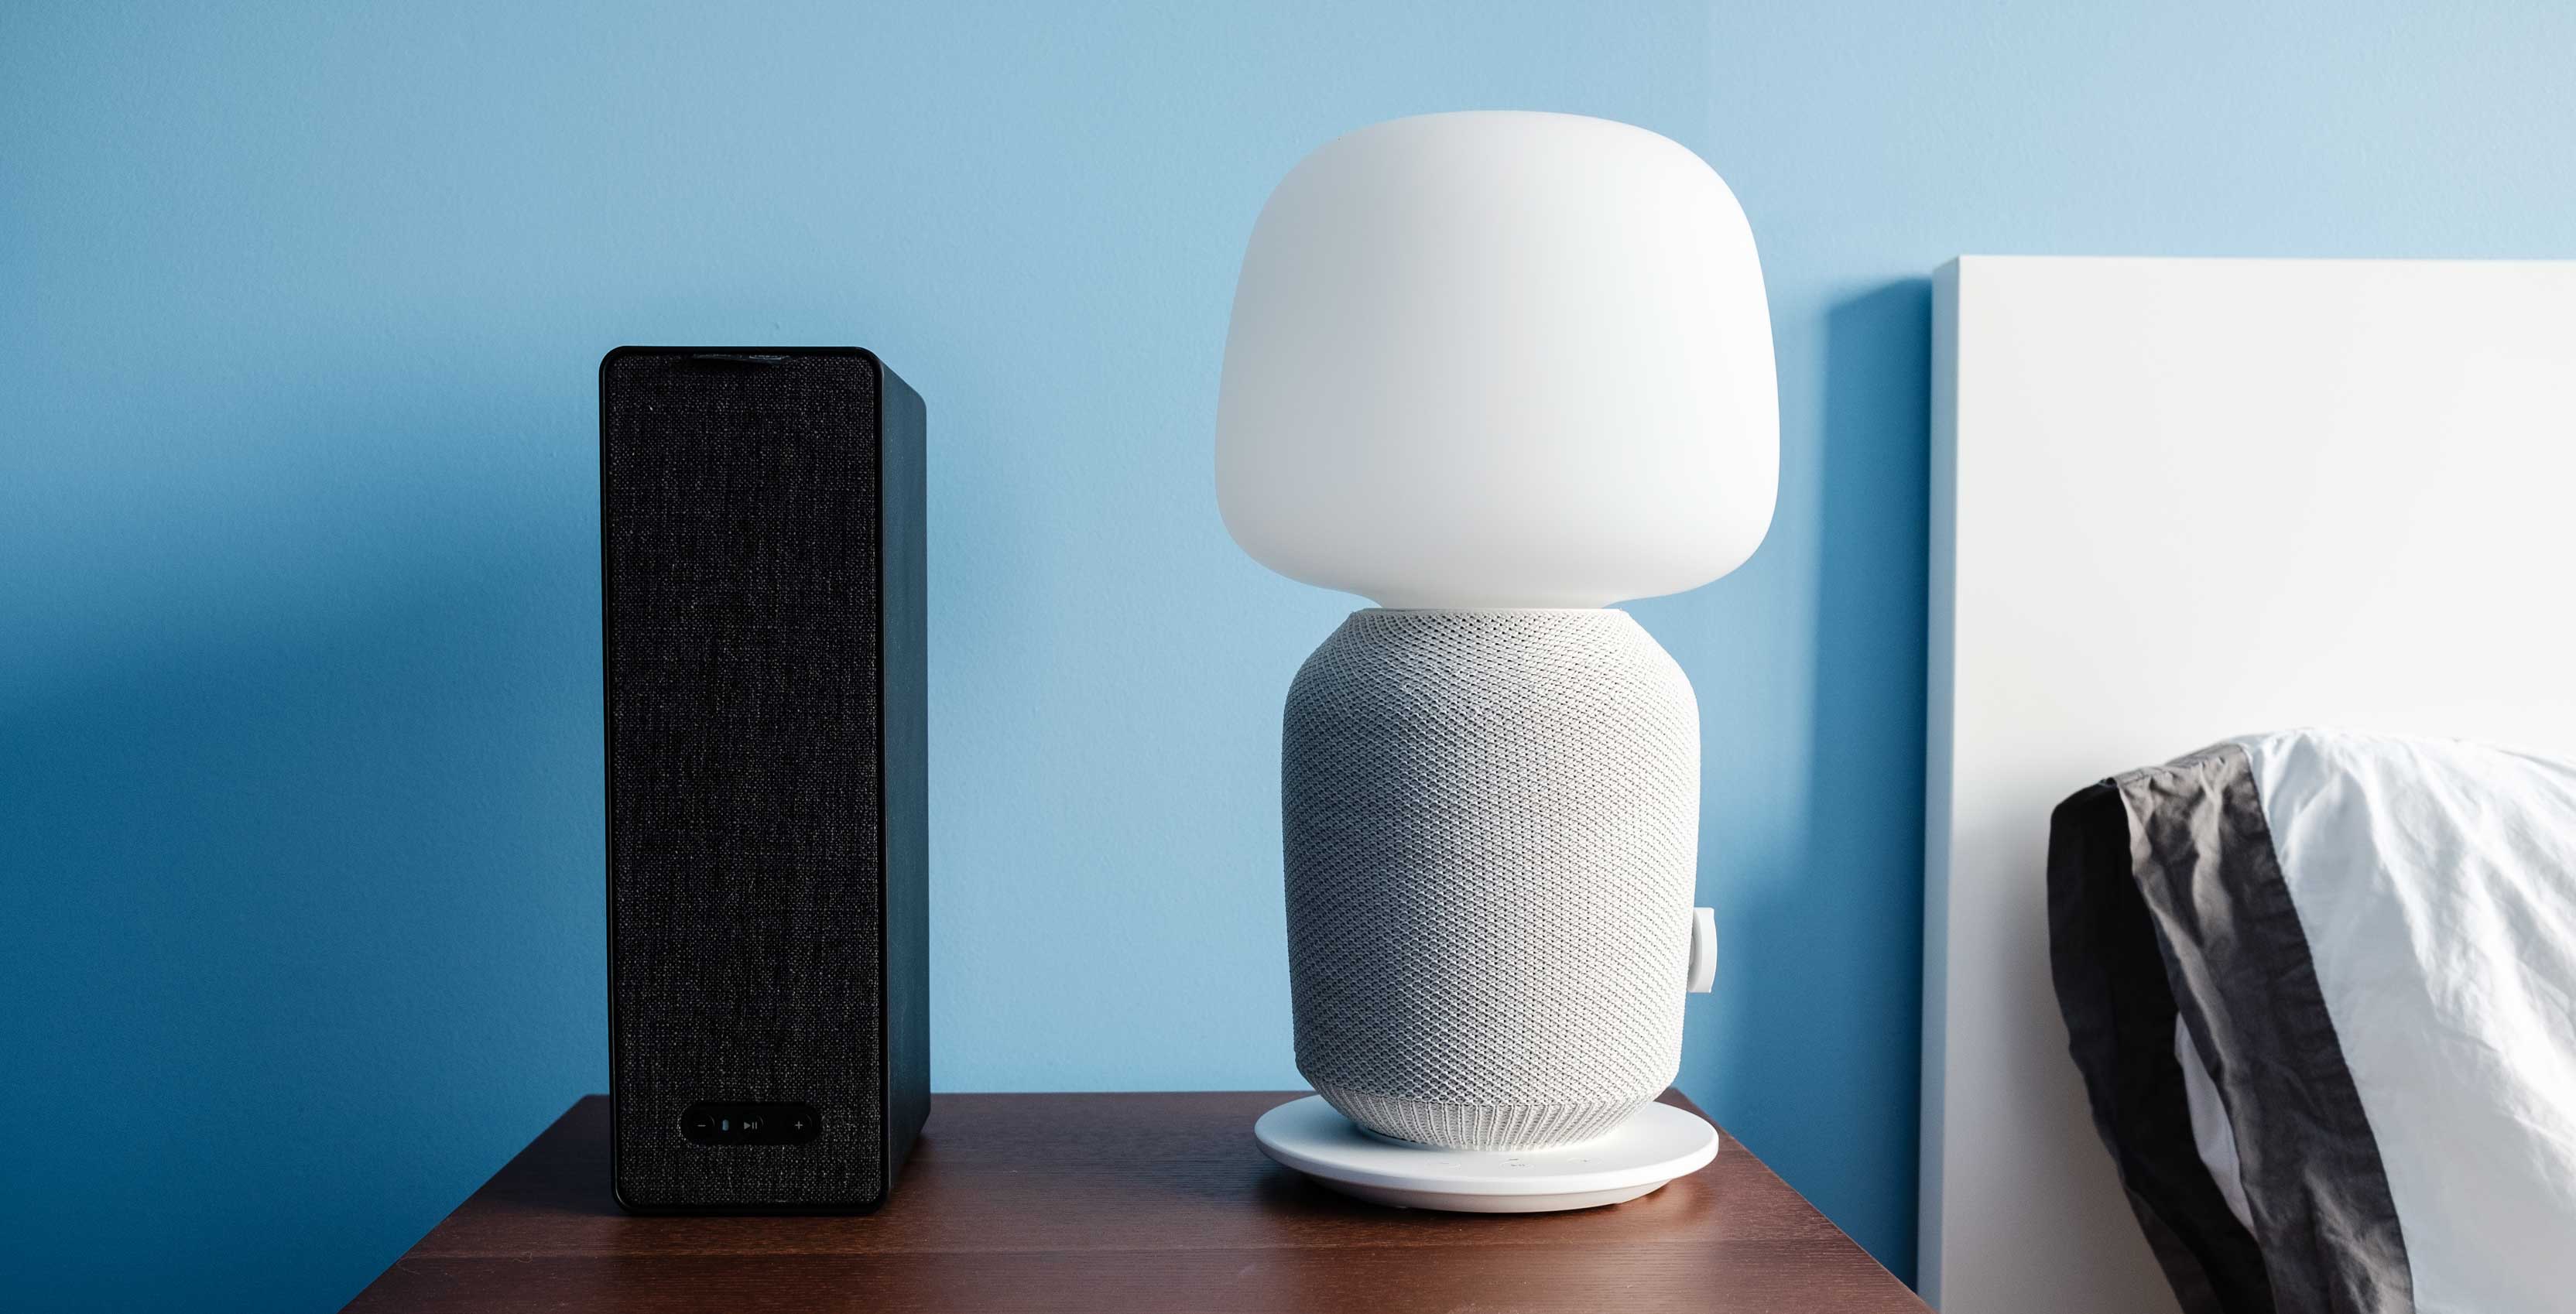 Ikea's new Symfonisk Wi-Fi speaker lineup